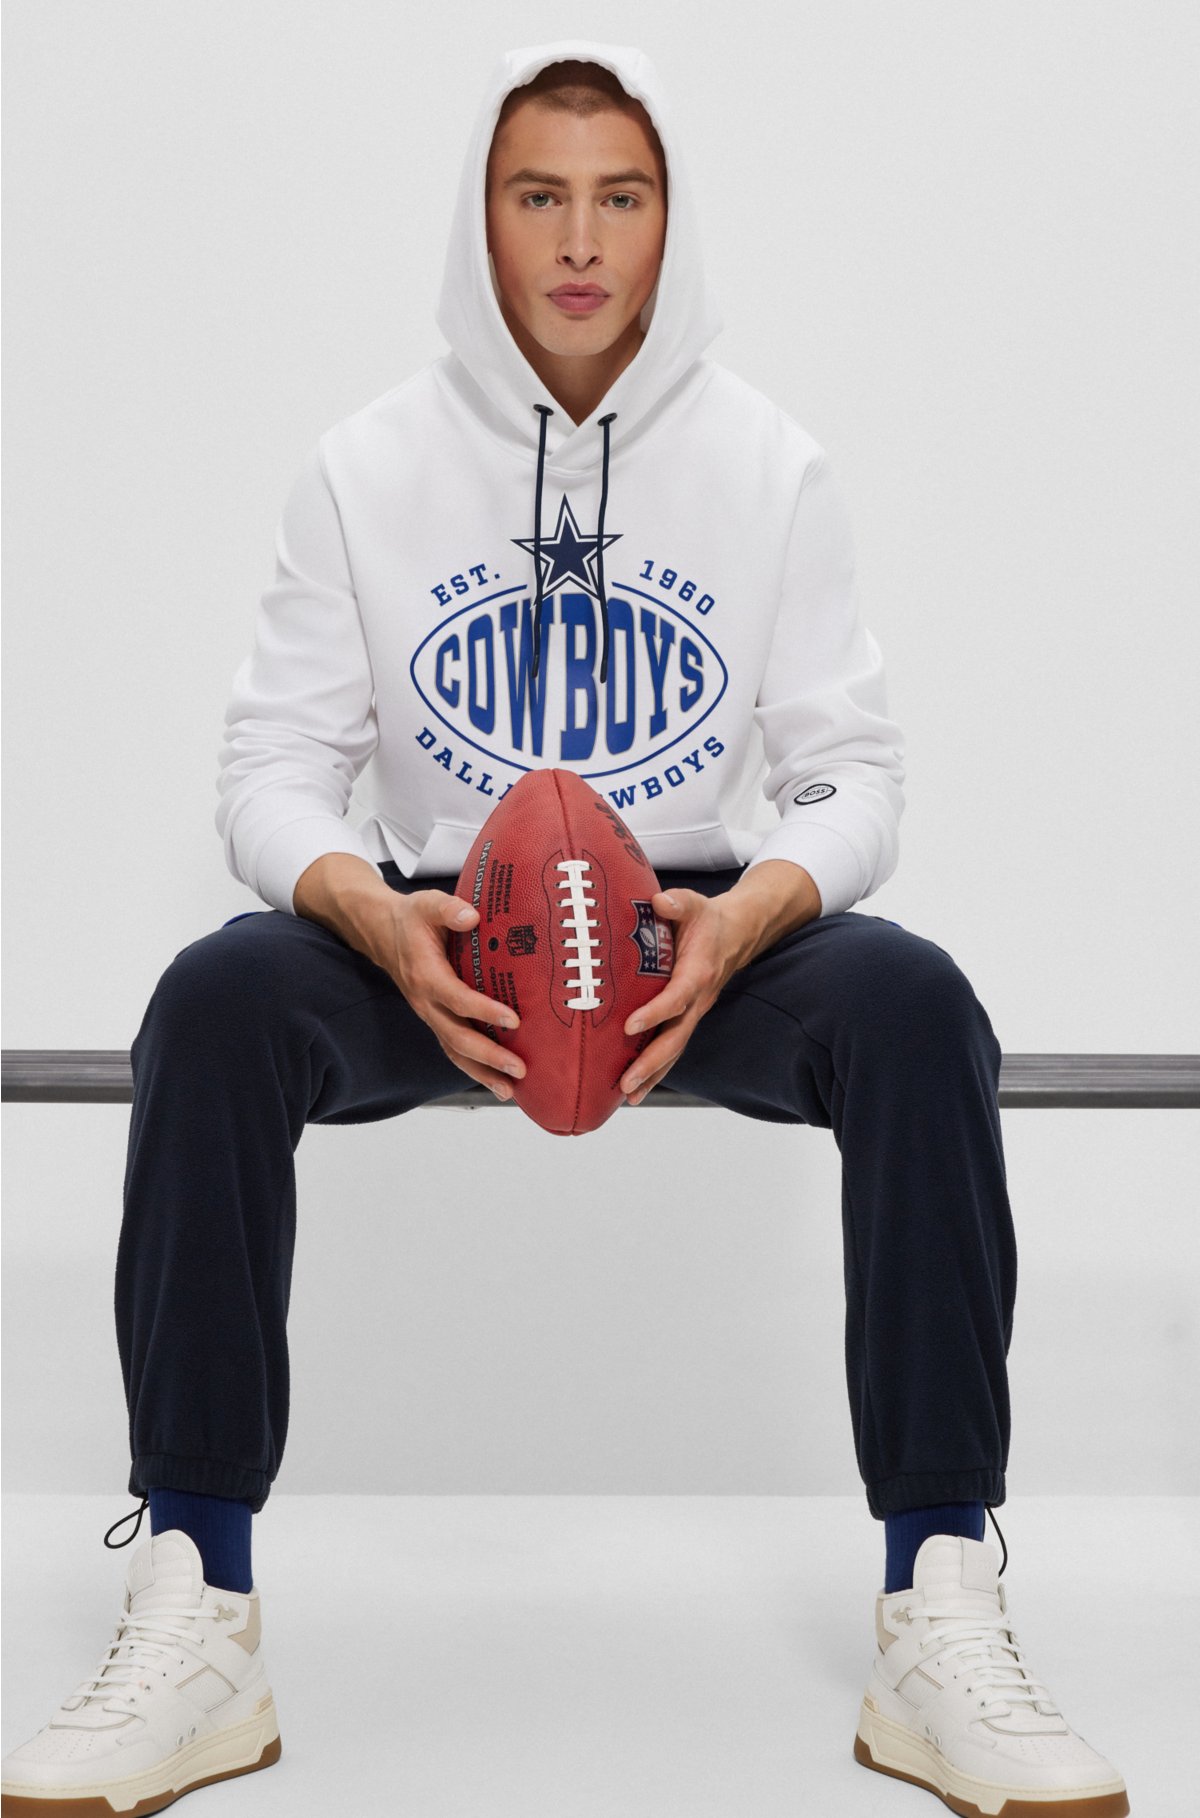 Dallas Cowboys 5 rings club player football poster shirt, hoodie